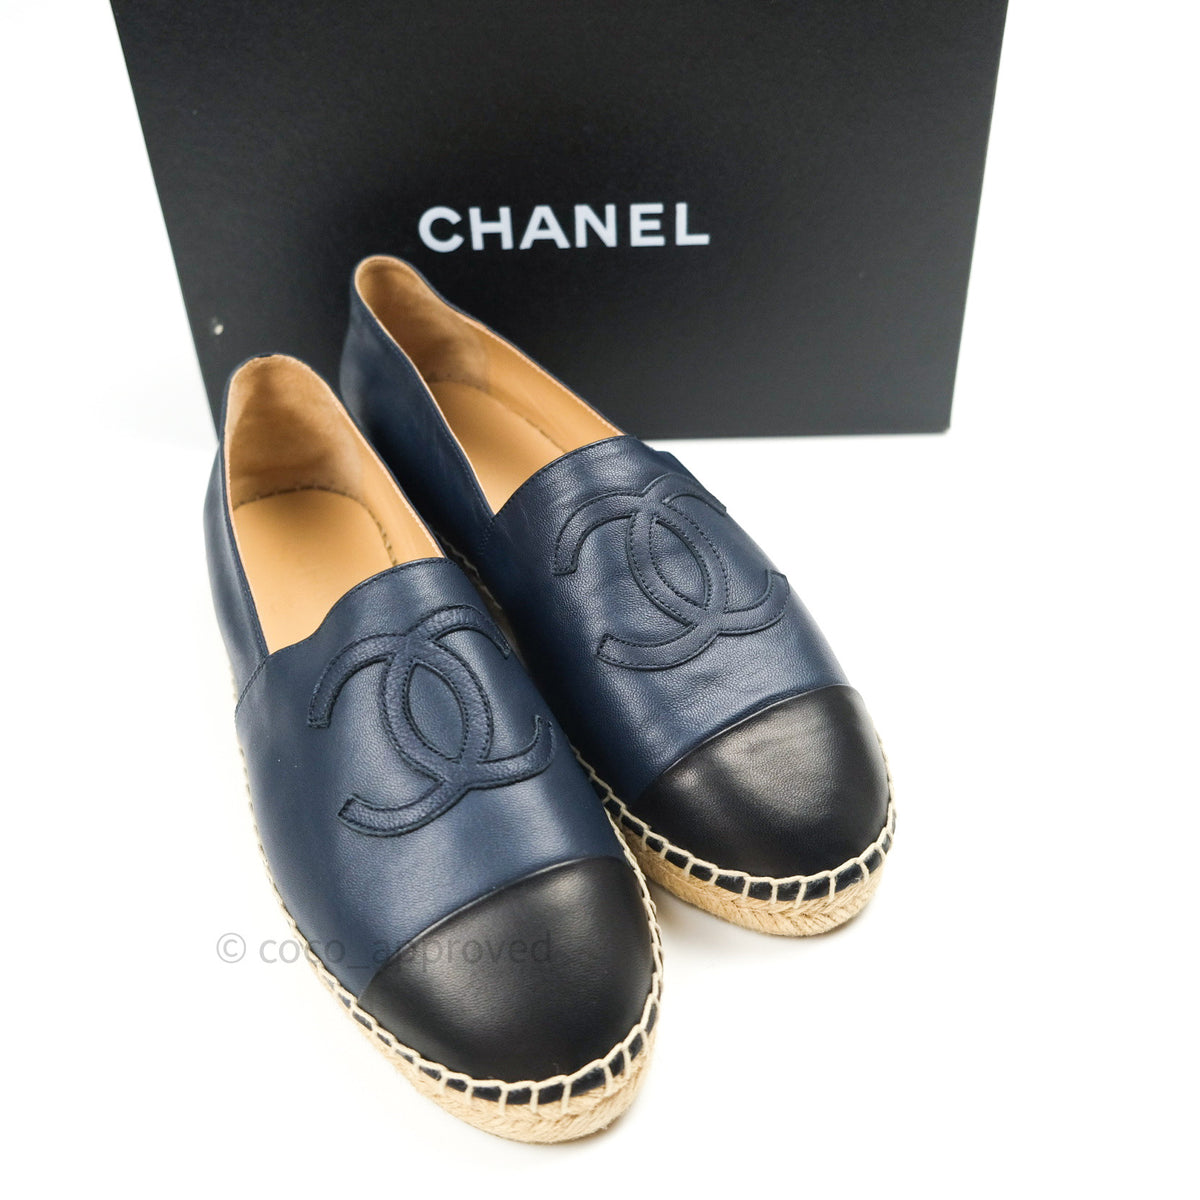 Chanel espadrilles 38 - Gem